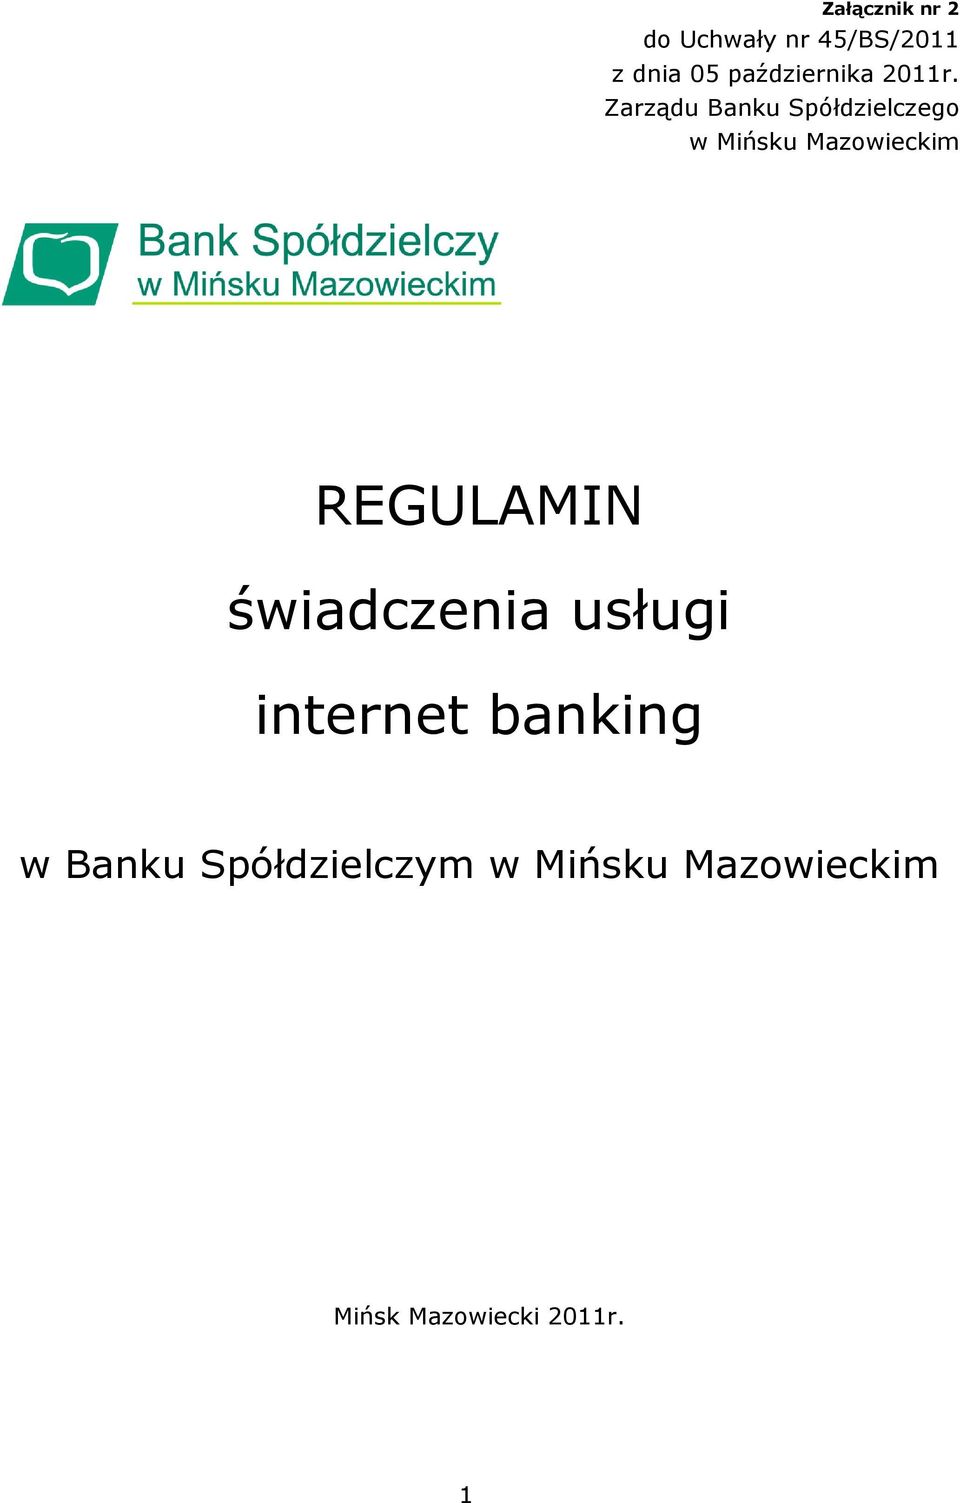 Zarządu Banku Spółdzielczego w Mińsku Mazowieckim